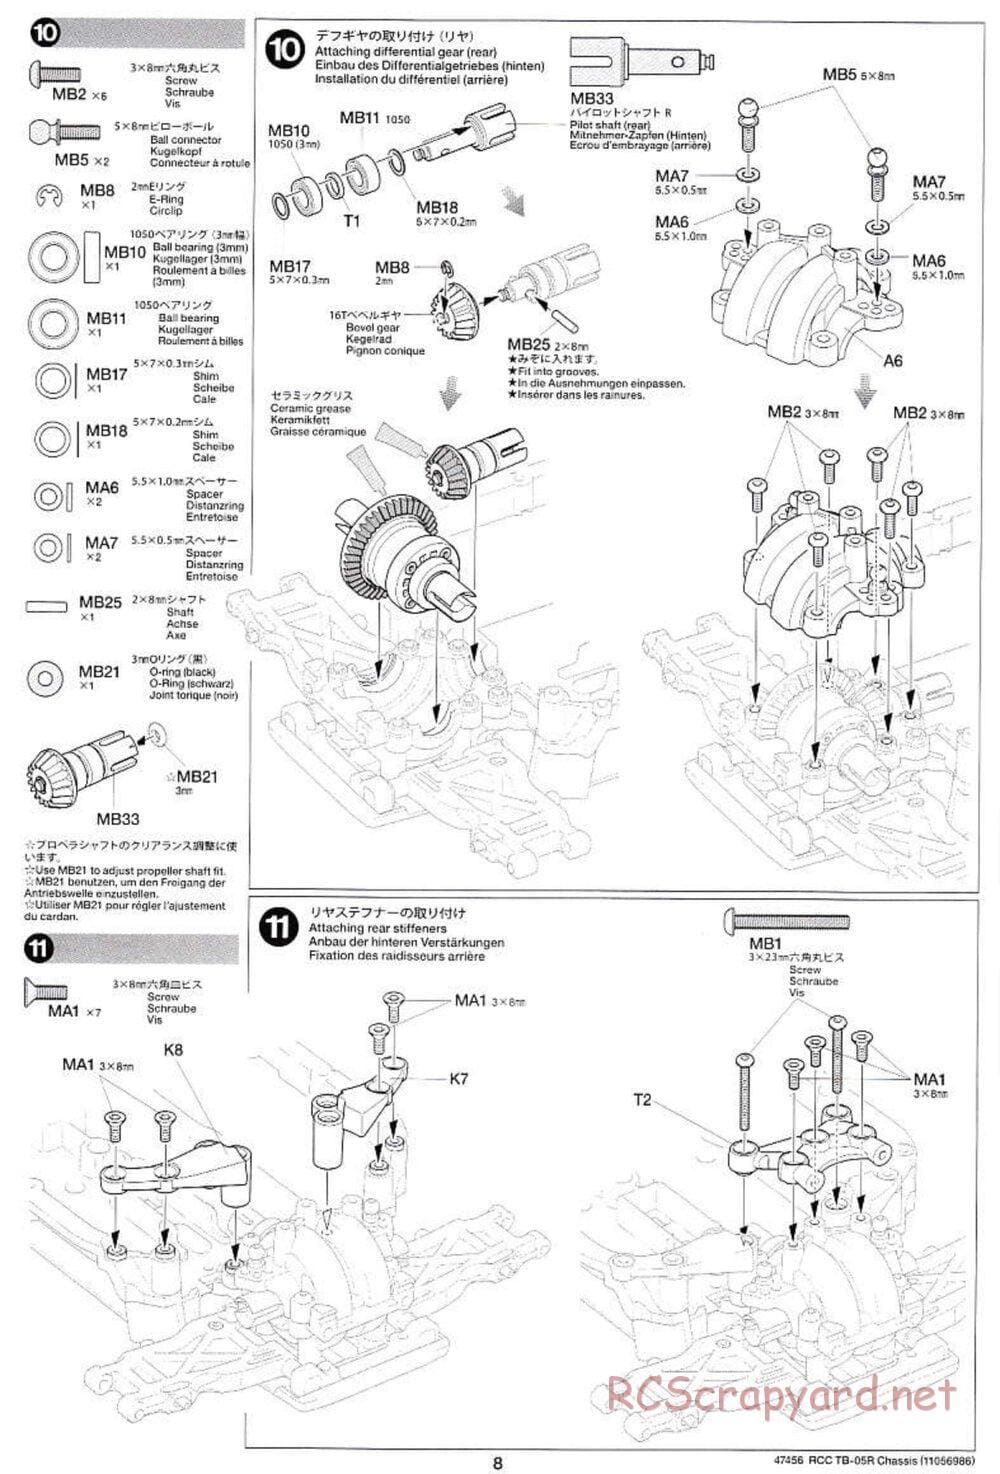 Tamiya - TB-05R Chassis - Manual - Page 8